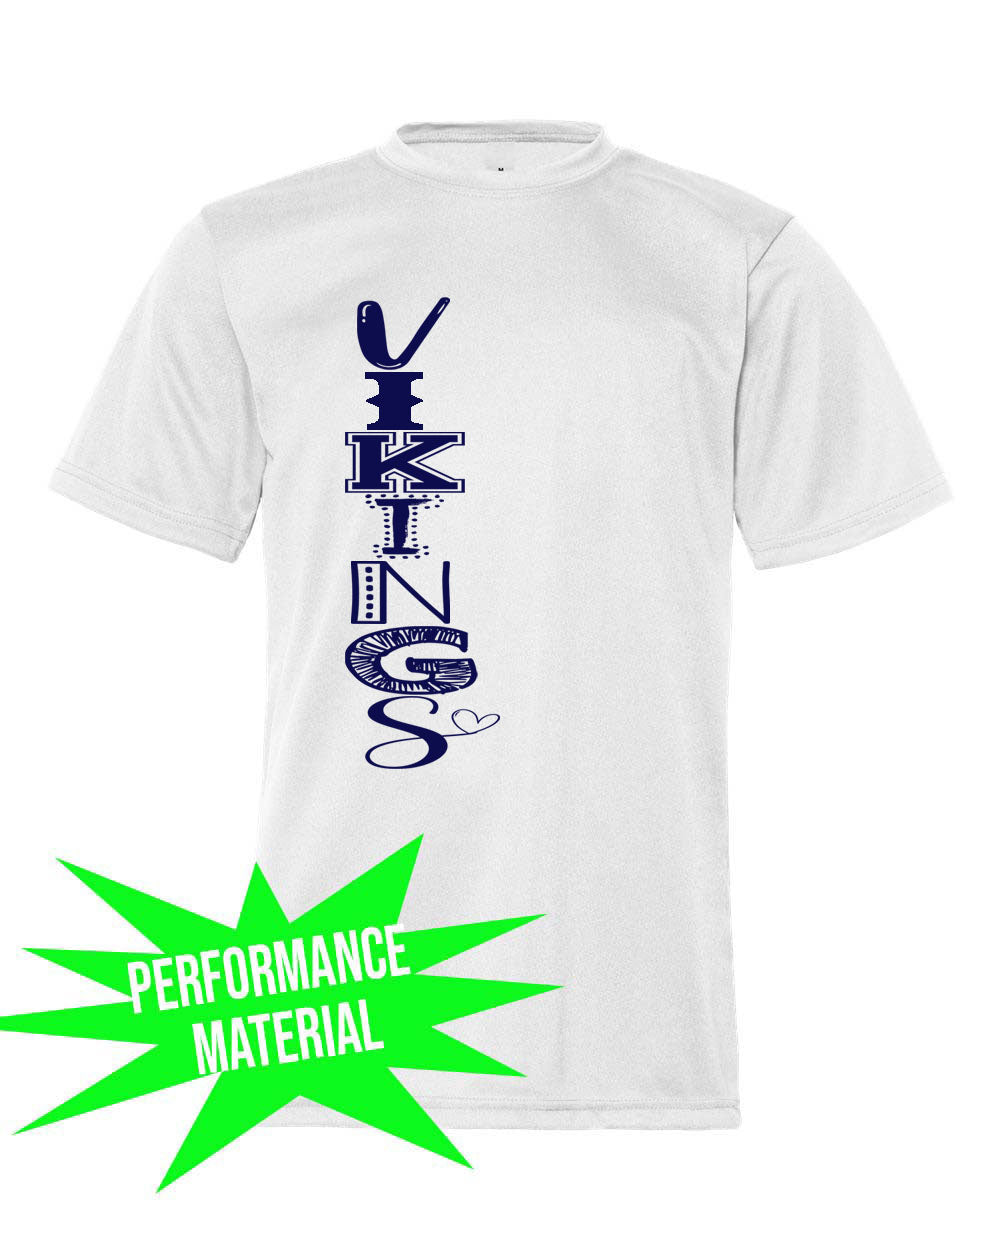 Cedar Mountain Performance Material T-Shirt  Design 3